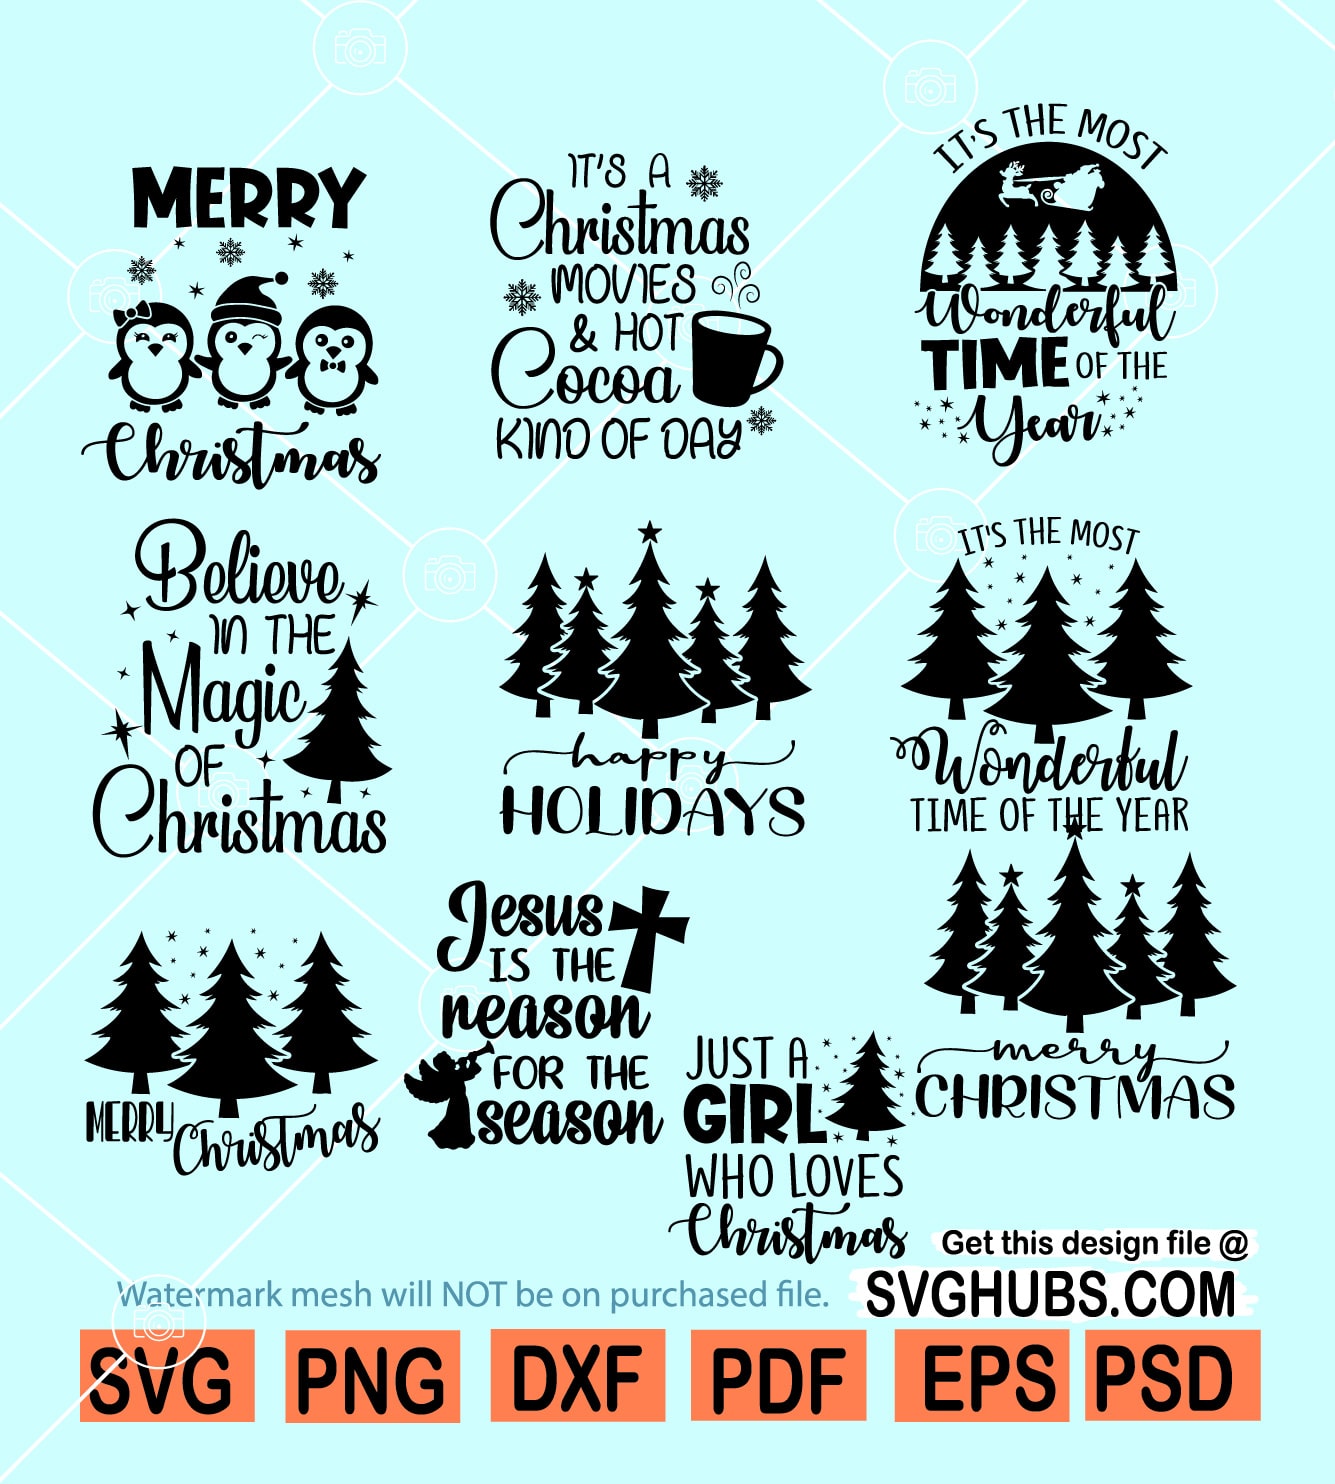 Christmas SVG bundle